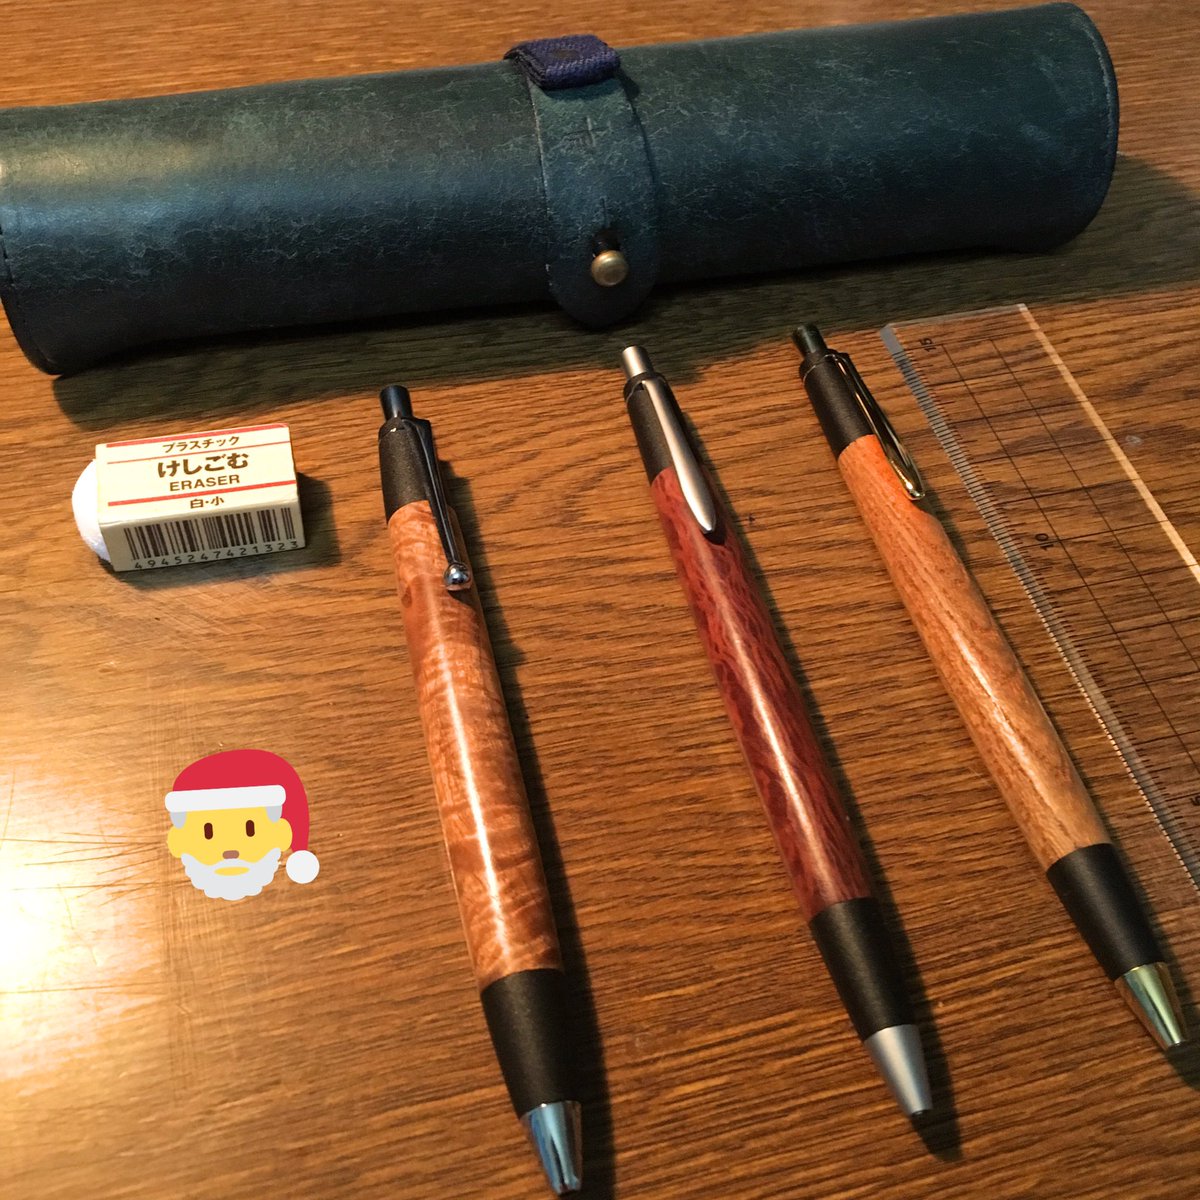 檸檬@文房具 on Twitter: "ペン類をまた木軸で統一😅 (しかも全部、野原工芸さんの) ペンケースも改めて見てると、結構味が出てきて